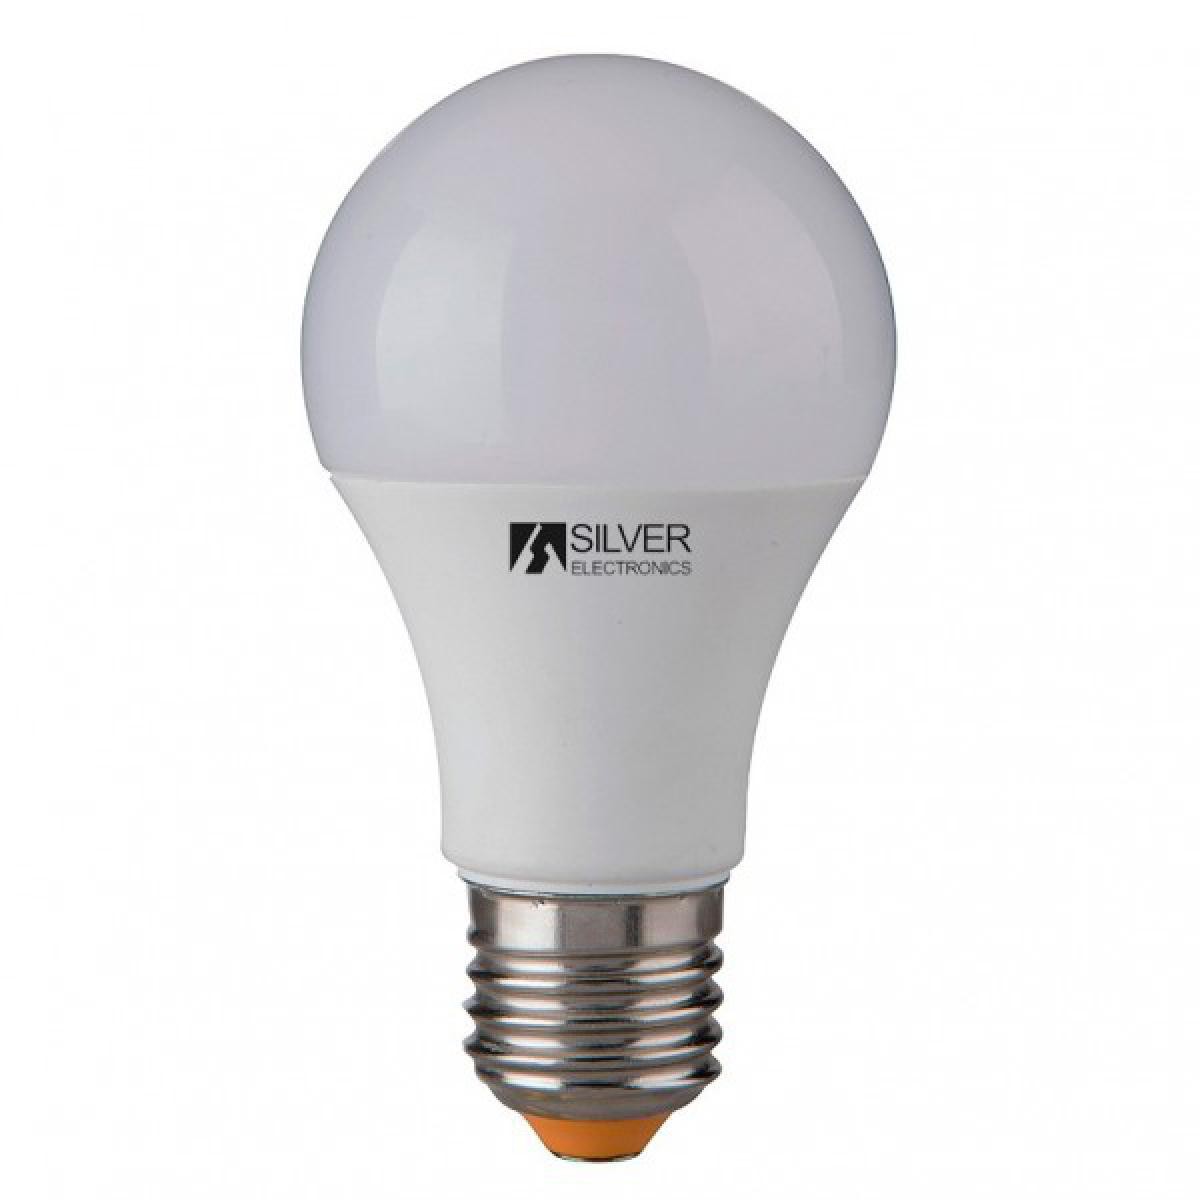 Totalcadeau - Ampoule LED Sphérique E27 10W Lumière chaude à faible consommation Choisissez votre option - 3000K pas cher - Ampoules LED